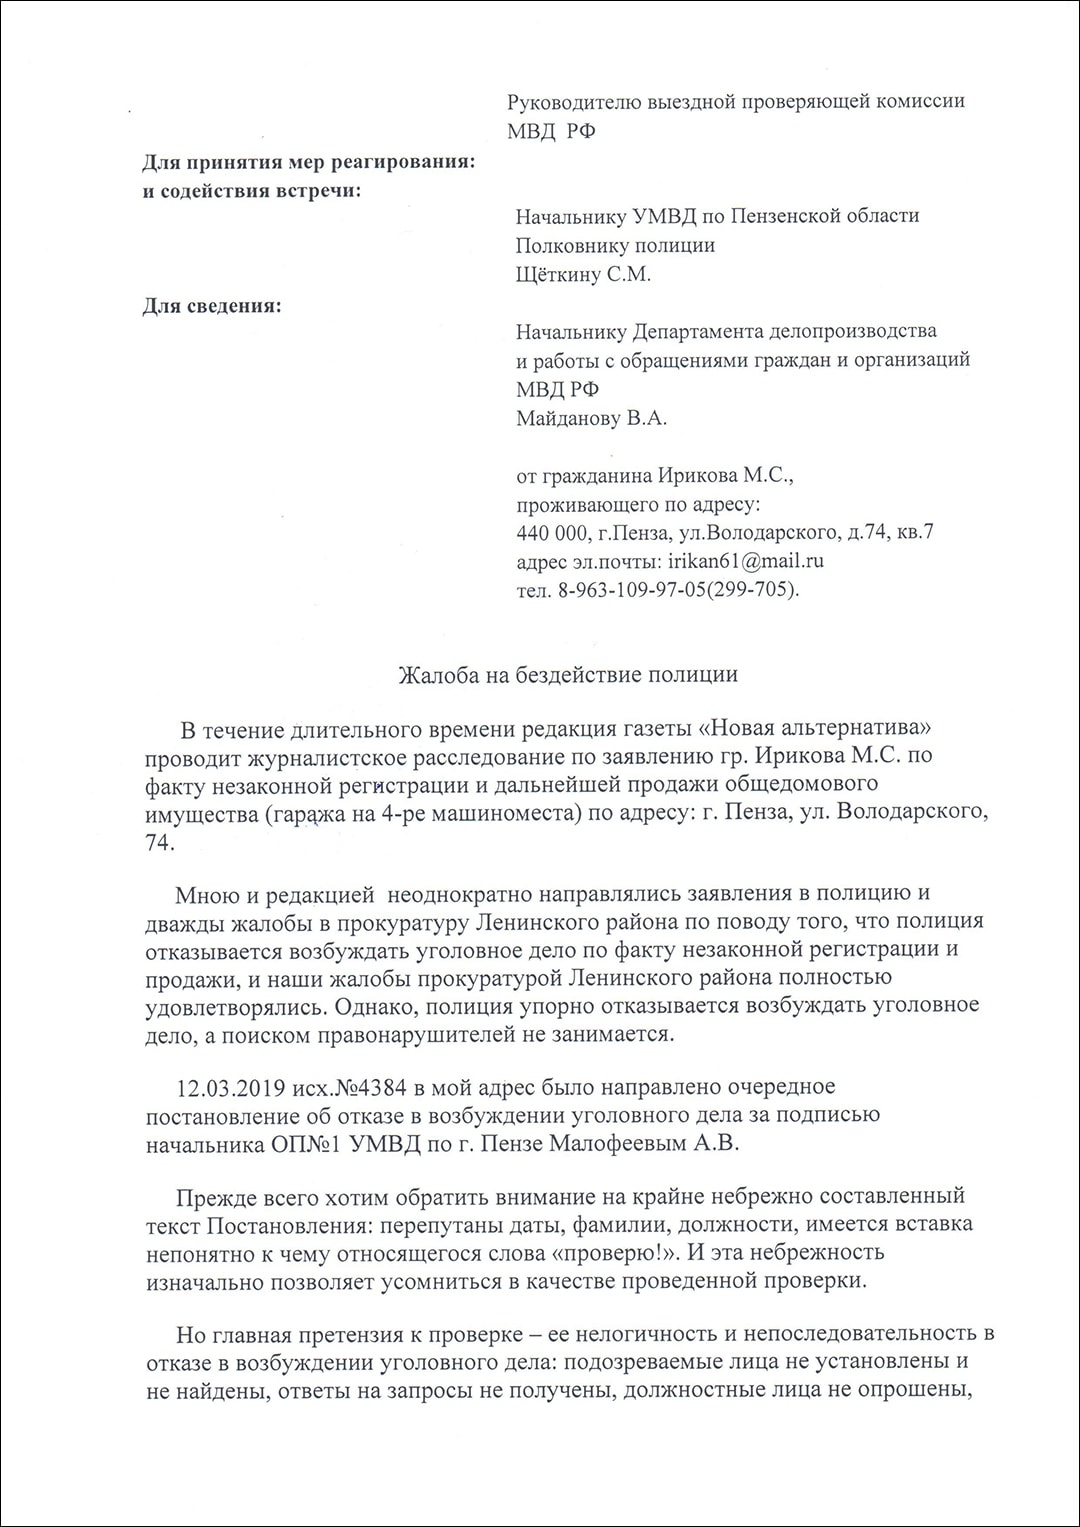 Гараж на ул. Володарского в Пензе с сомнительной регистрацией права собственности